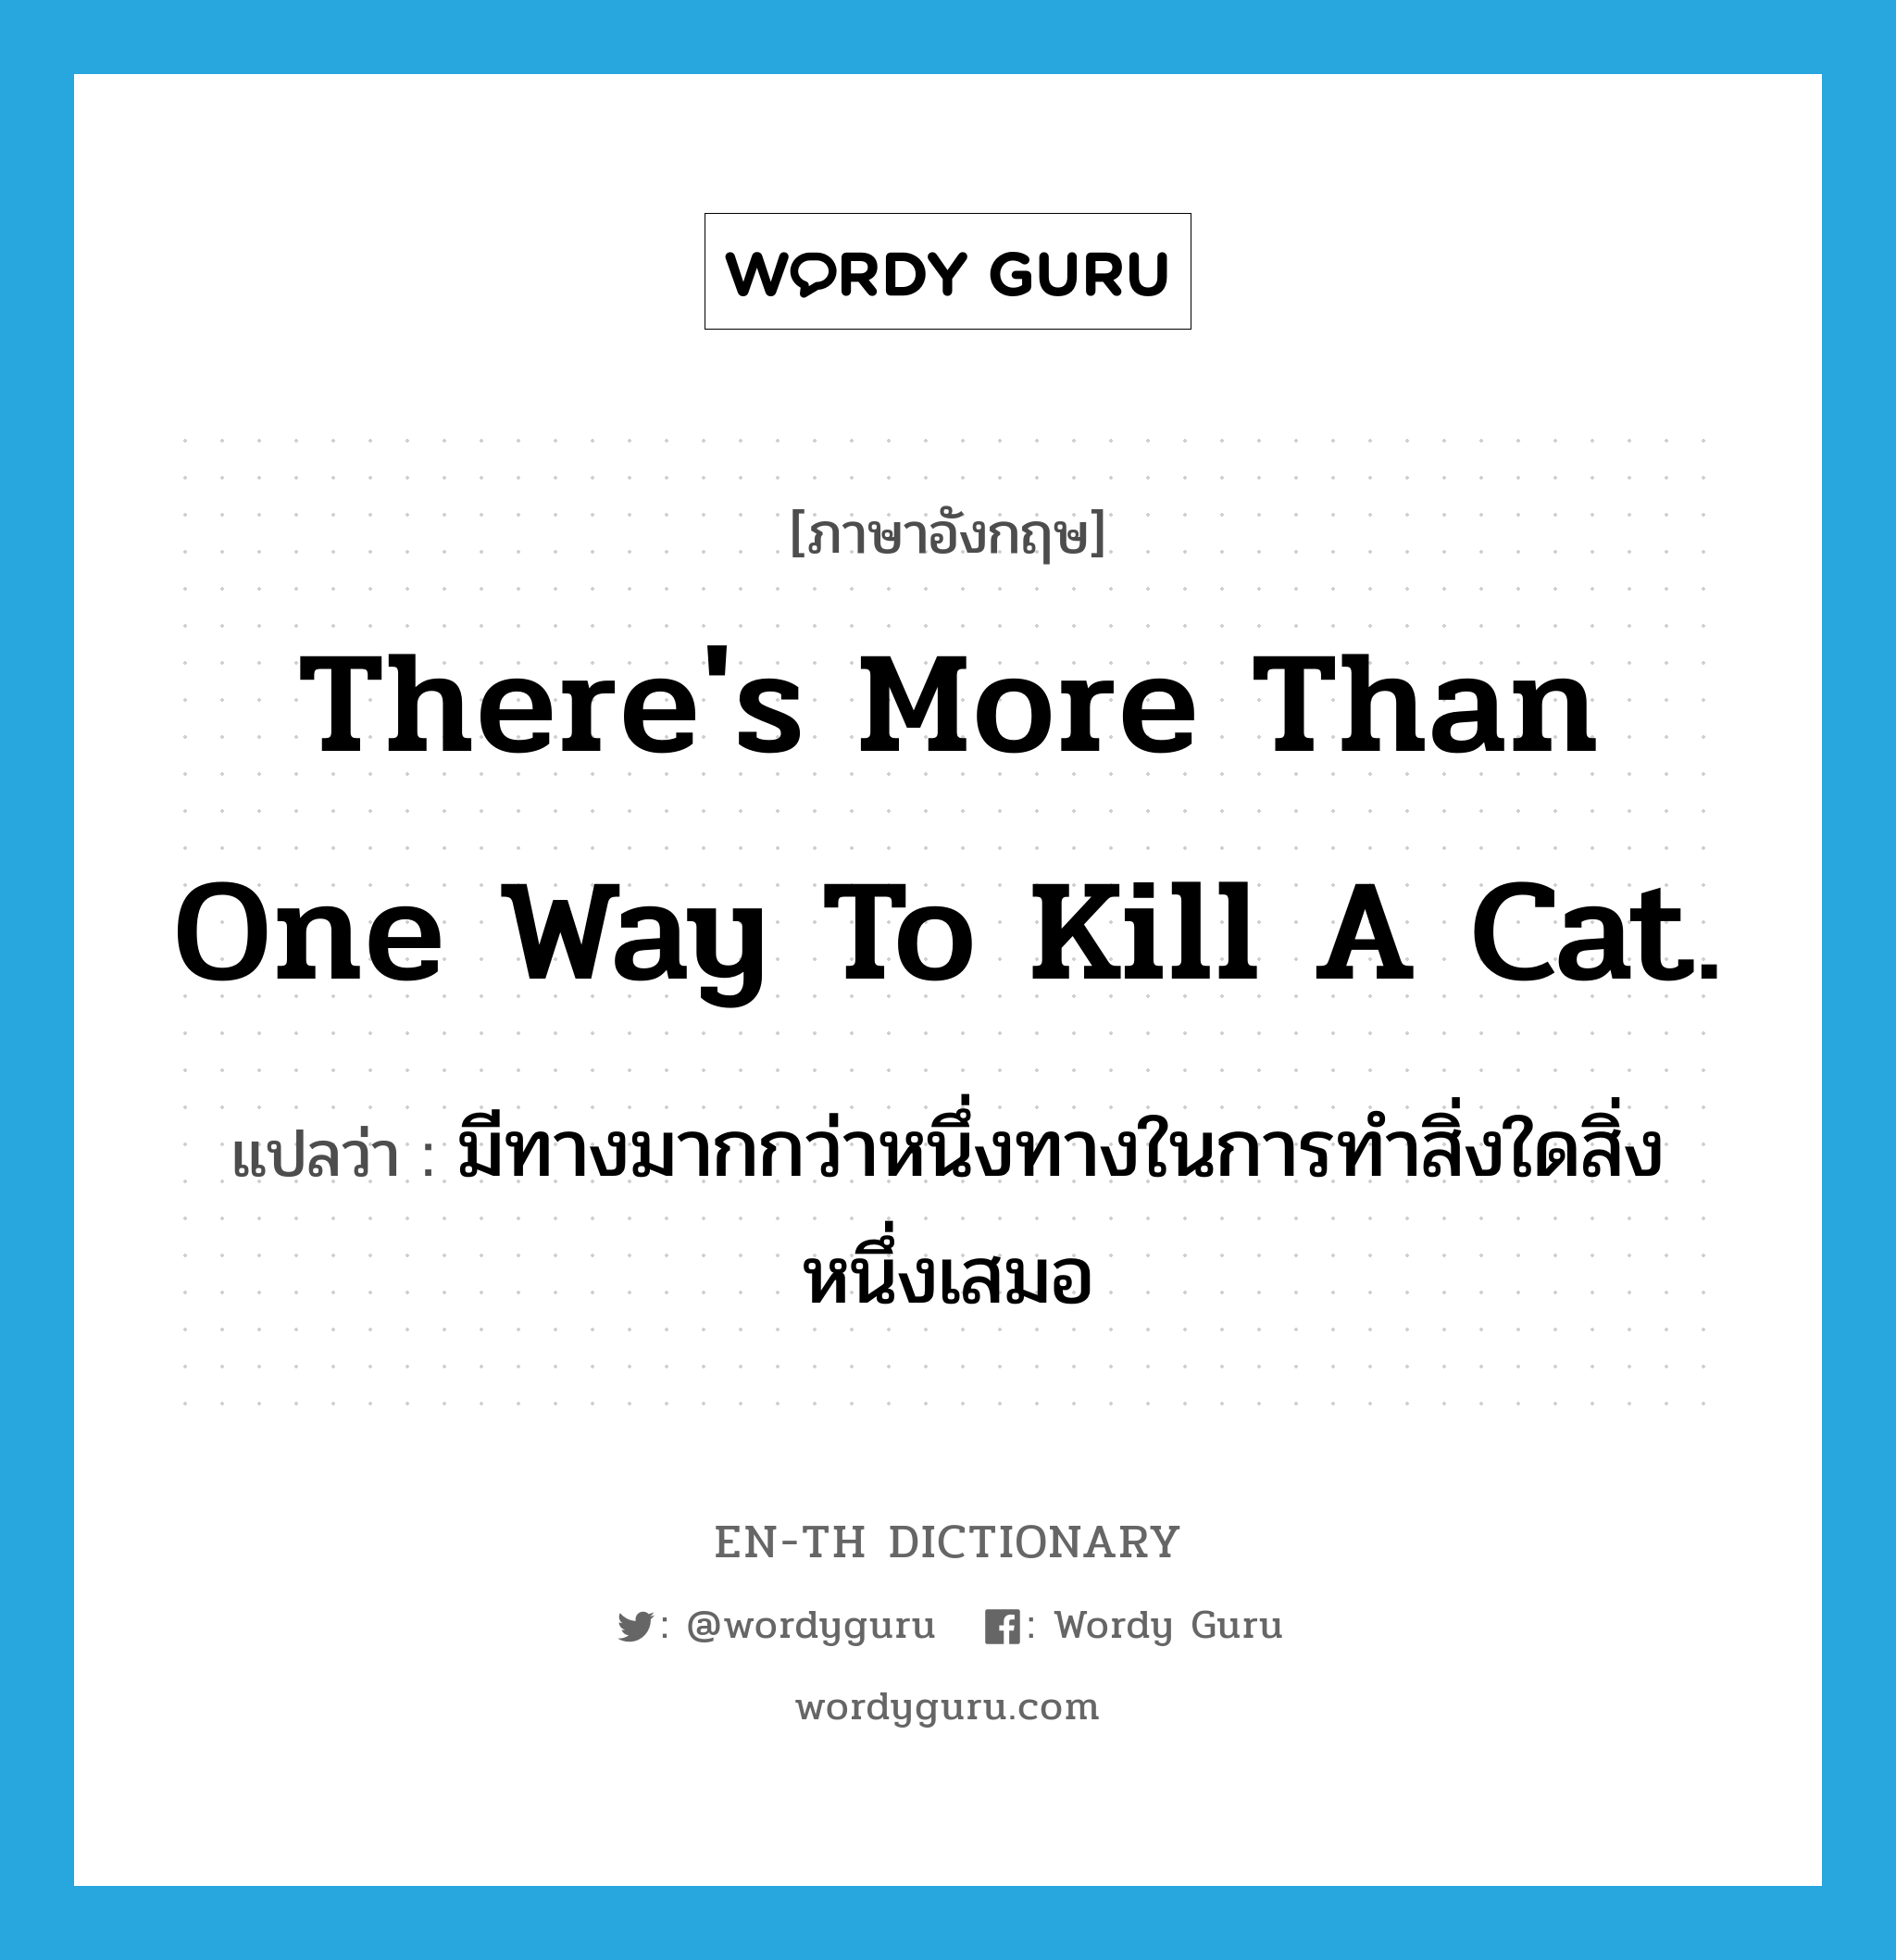 มีทางมากกว่าหนึ่งทางในการทำสิ่งใดสิ่งหนึ่งเสมอ ภาษาอังกฤษ?, คำศัพท์ภาษาอังกฤษ มีทางมากกว่าหนึ่งทางในการทำสิ่งใดสิ่งหนึ่งเสมอ แปลว่า There's more than one way to kill a cat. ประเภท IDM หมวด IDM